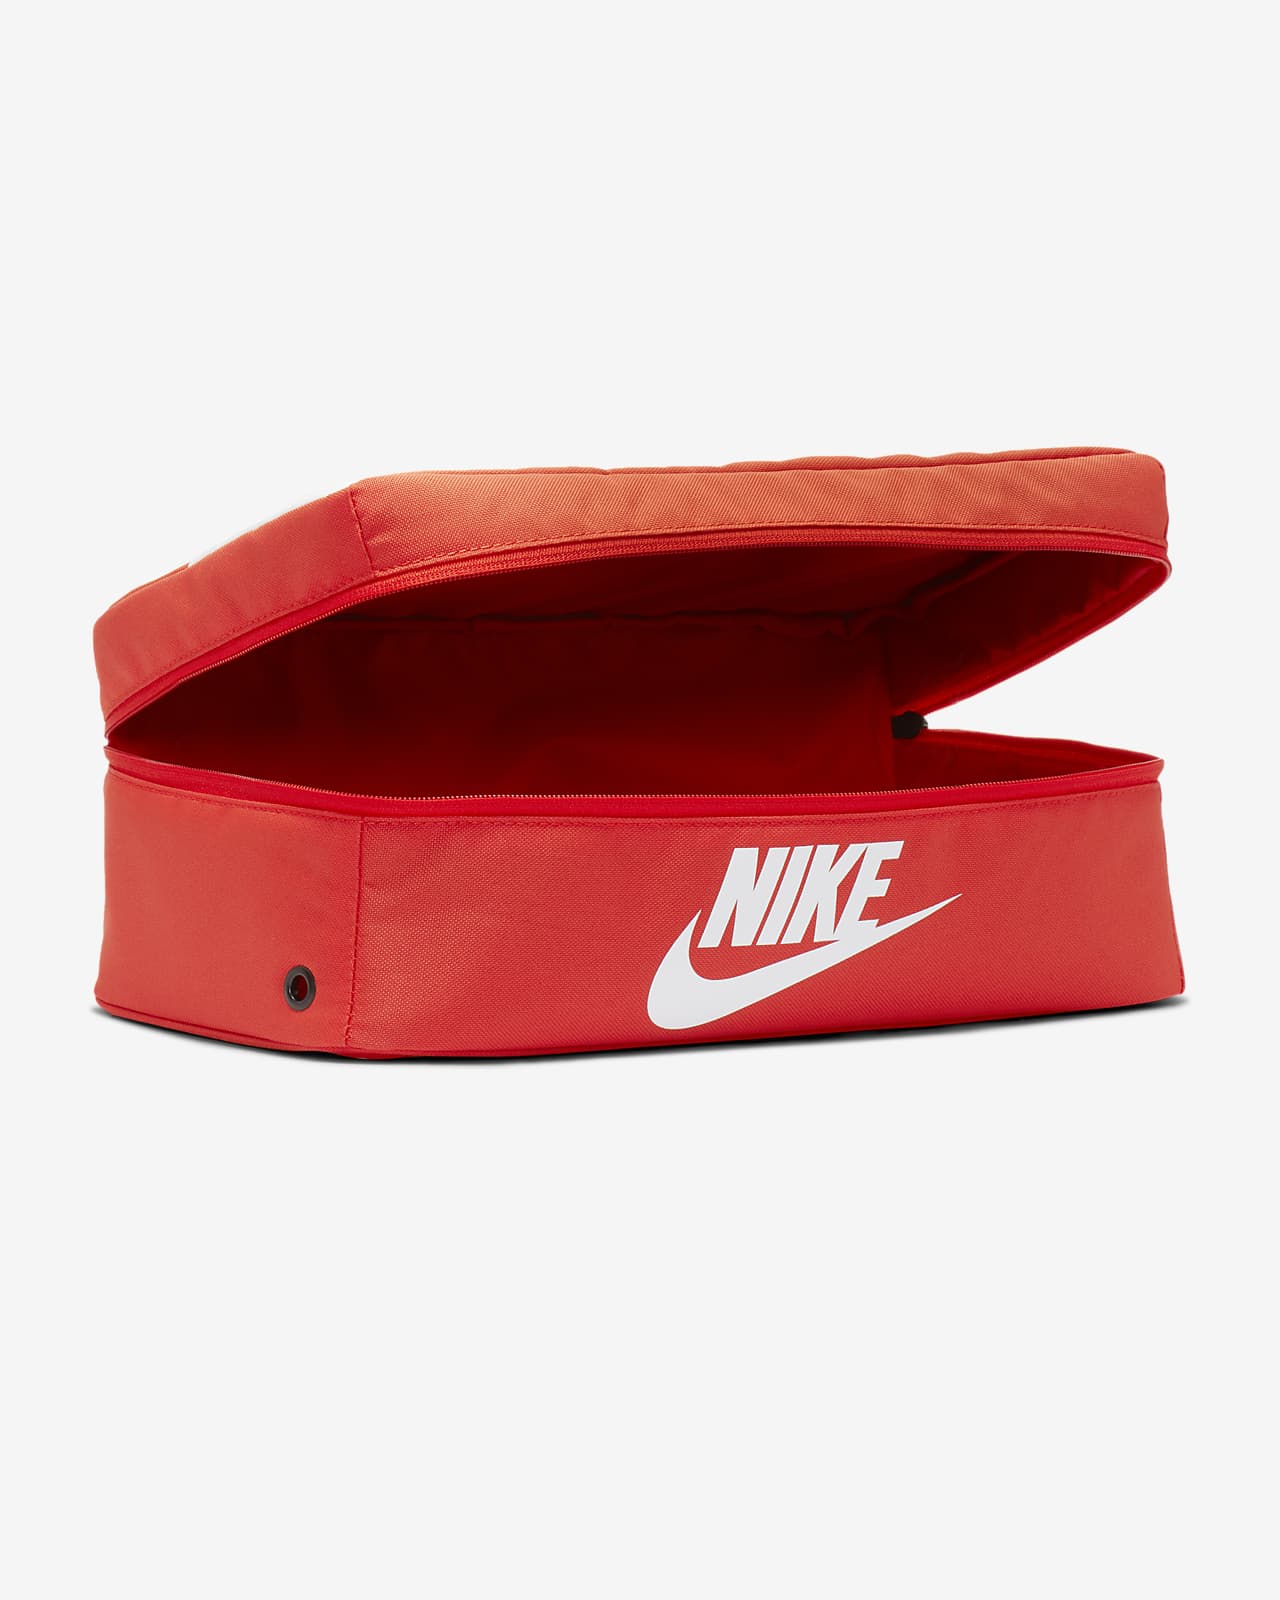 Sac Nike Shoebox Nike Fr